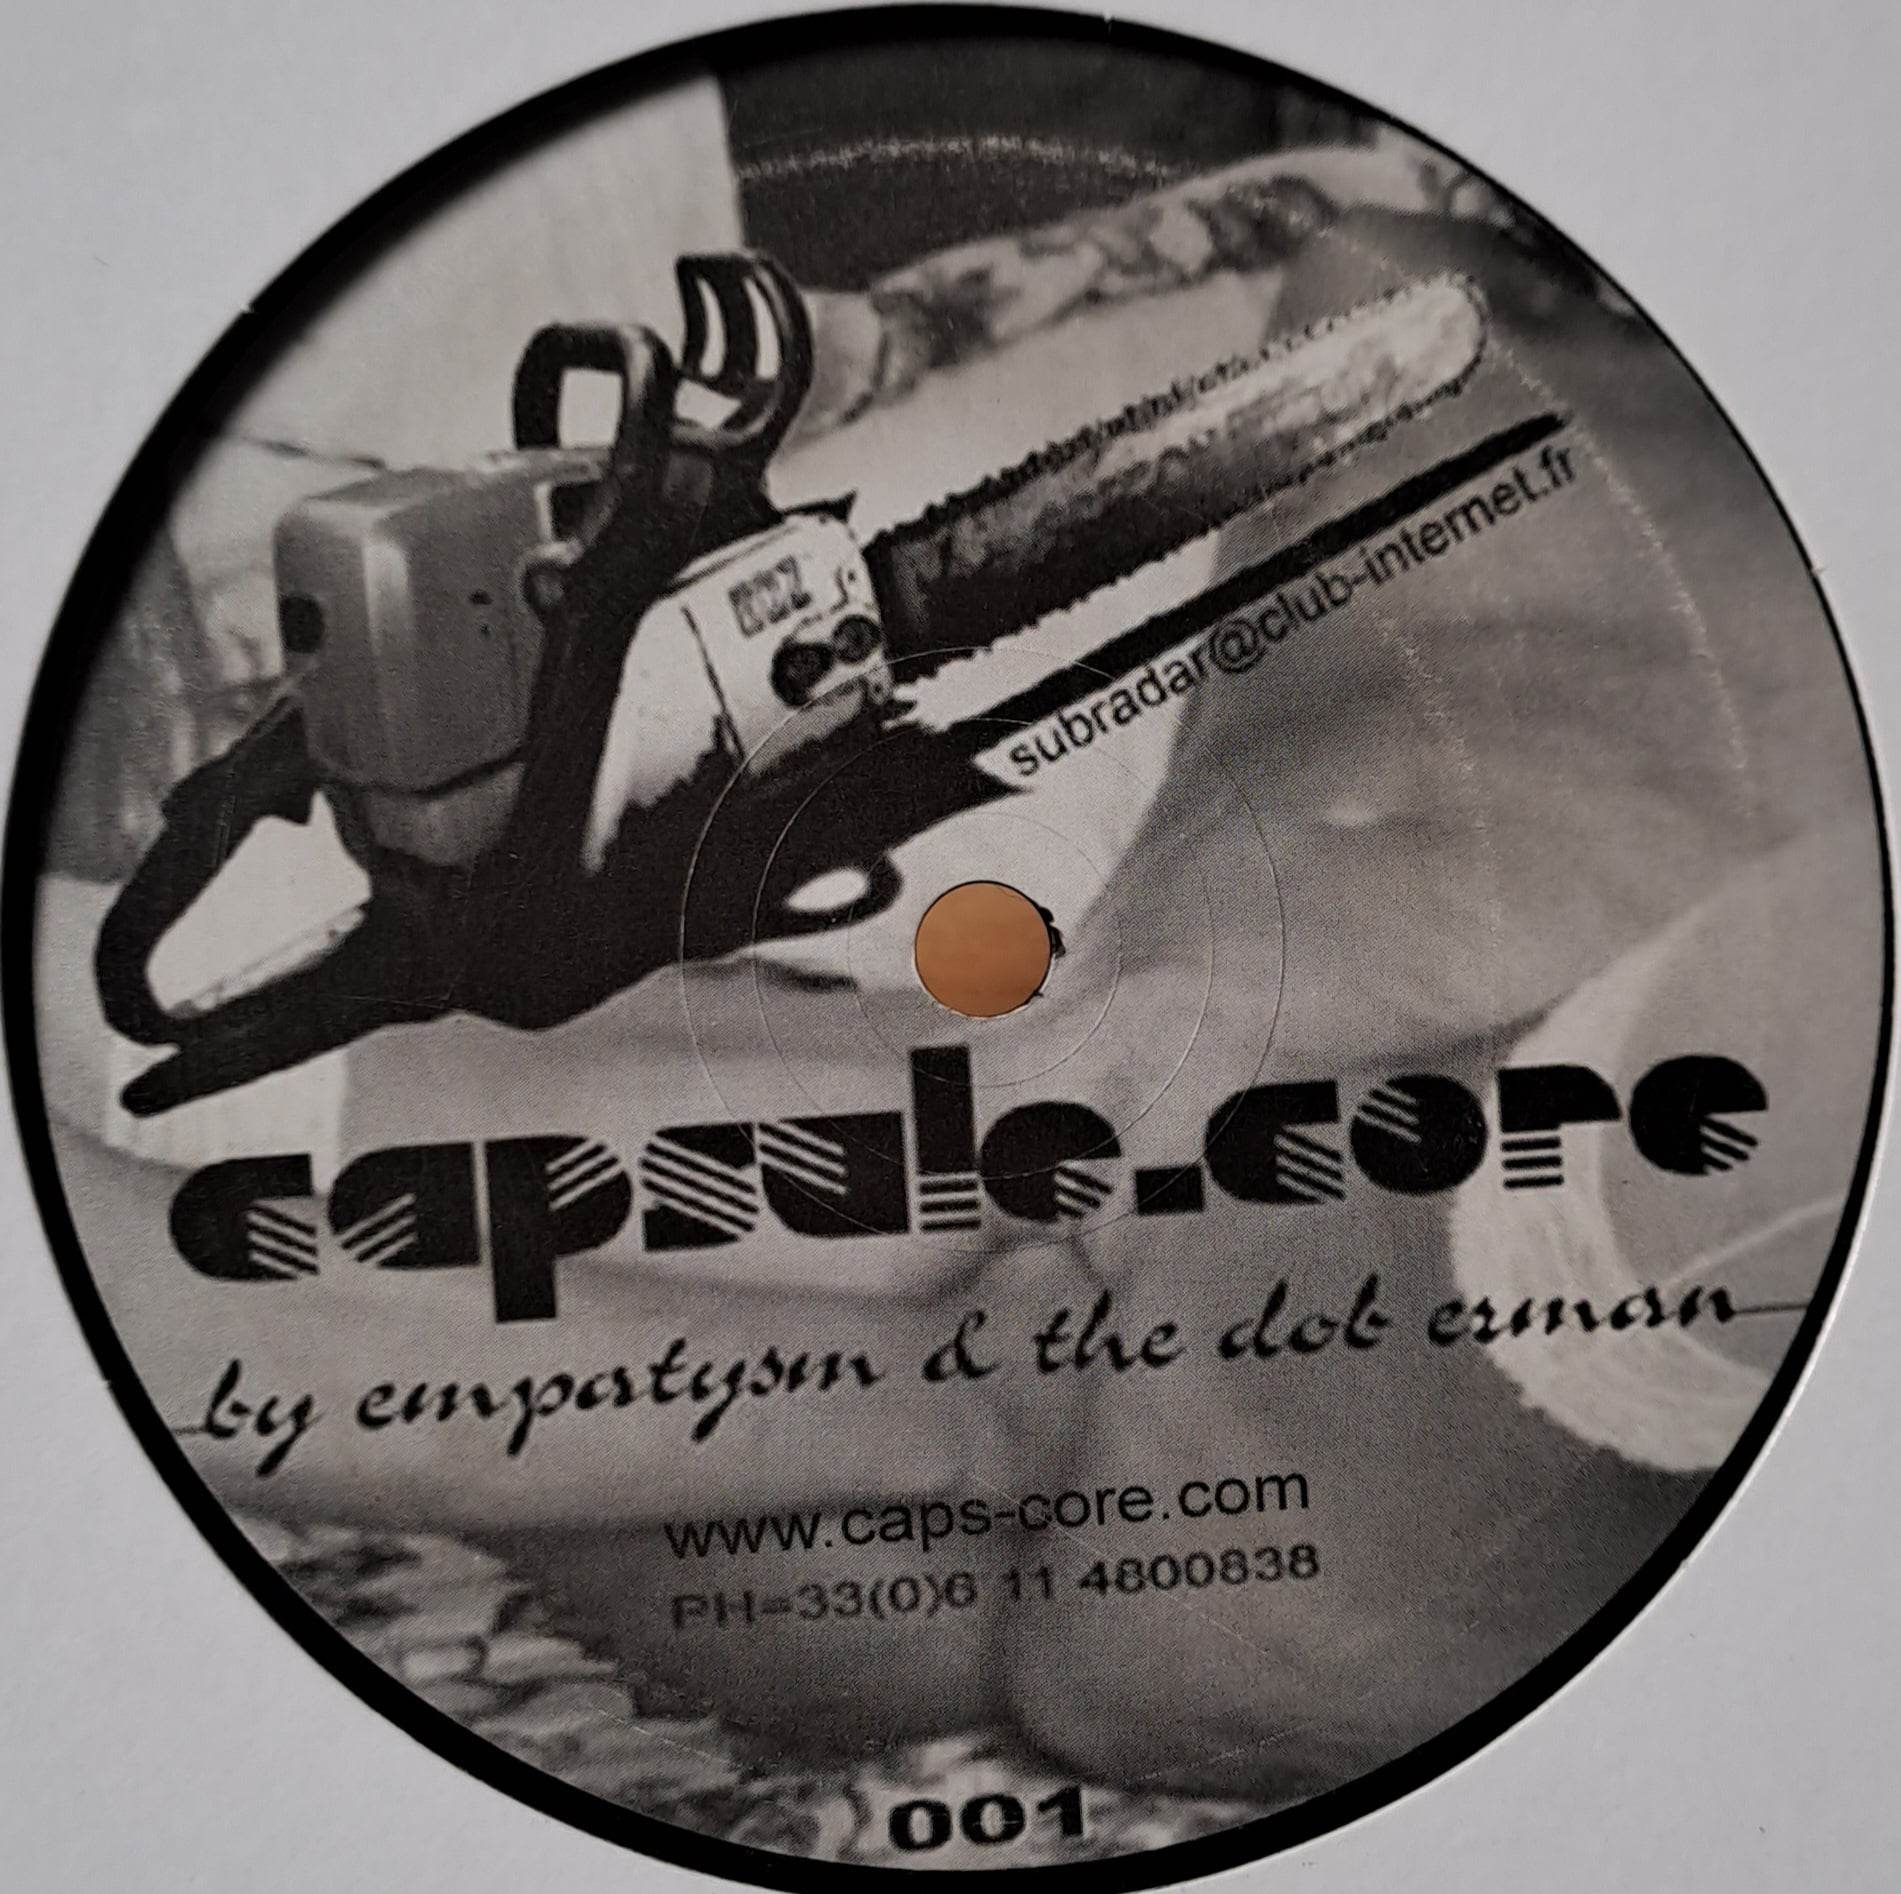 1) Capsule Core 01 - vinyle hardcore